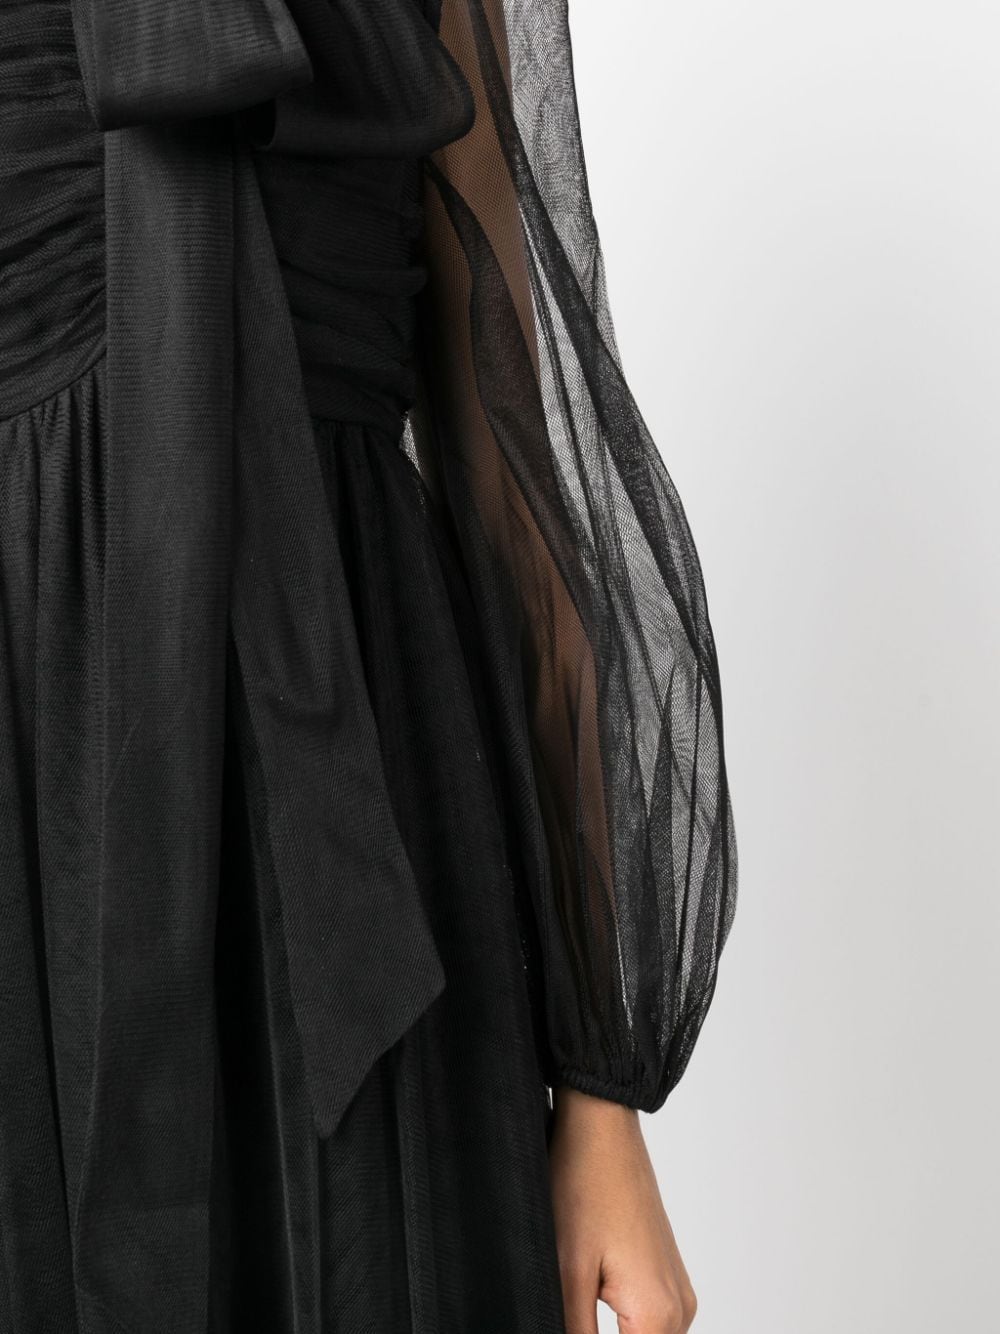 Tulle Midi Dress, black